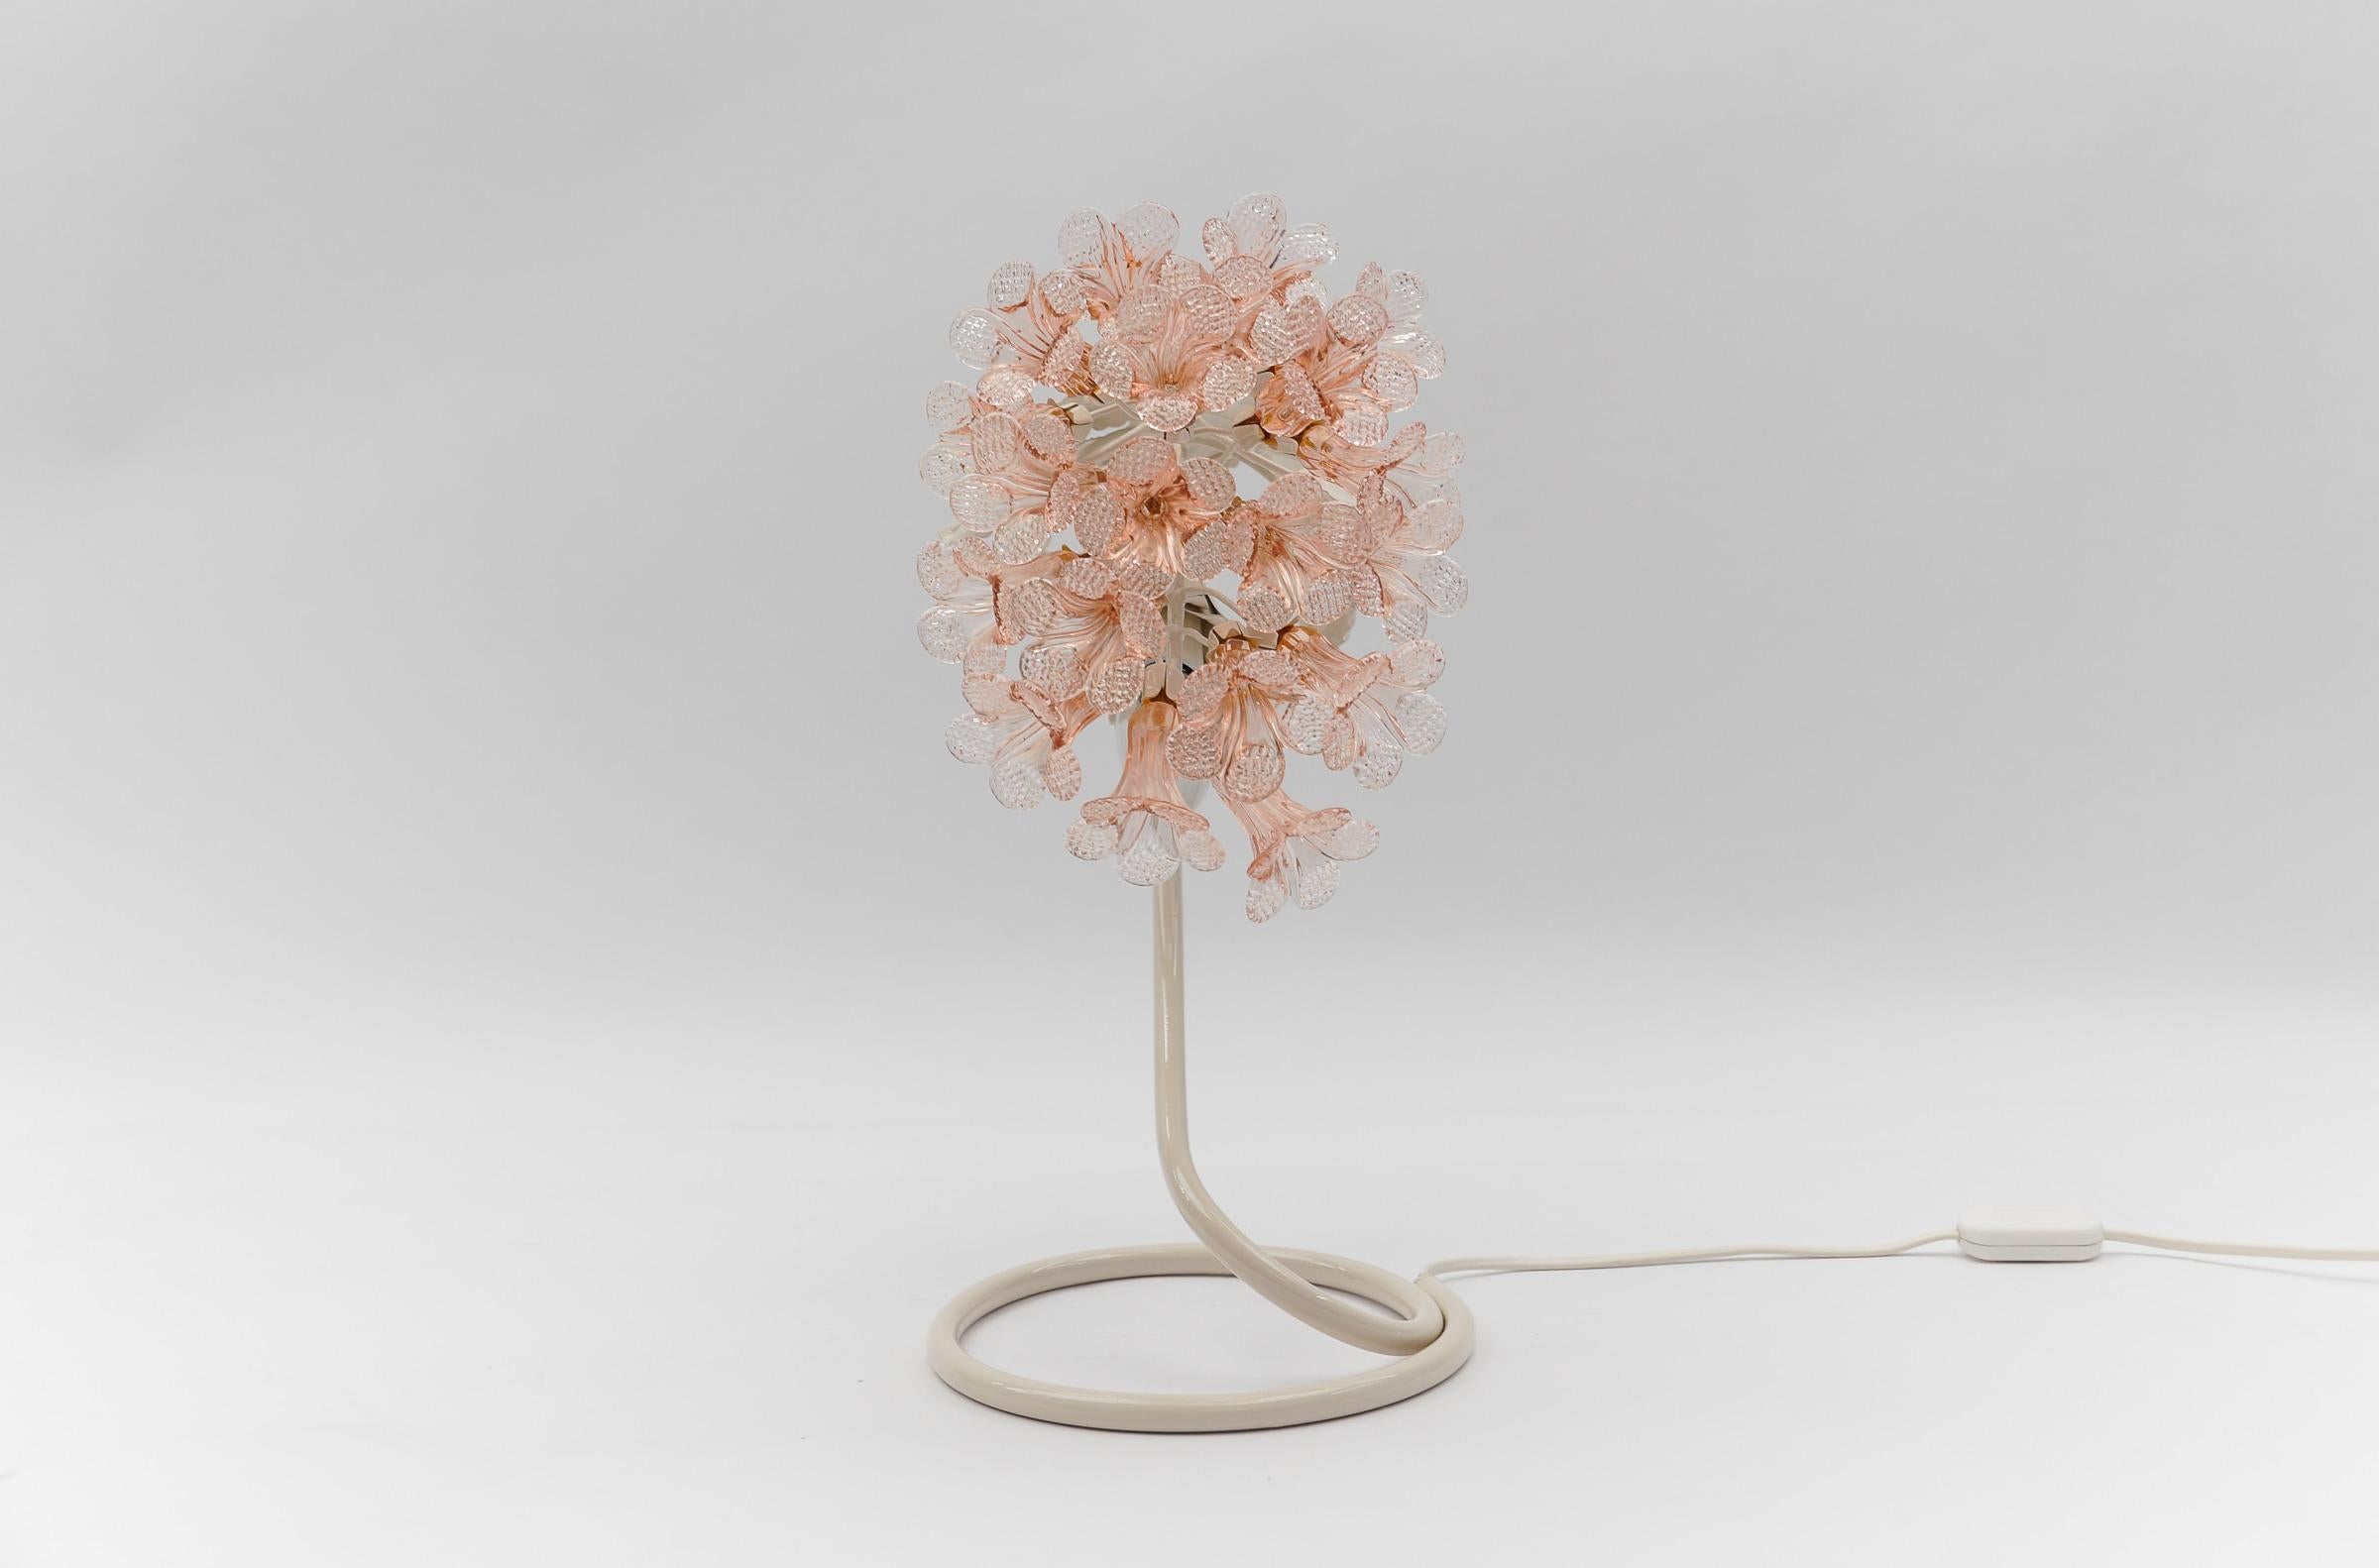 Moderne italienische Tischlampe aus rosafarbenem Murano-Glas Blumen, 1960er Jahre Italien.

Dimension
Höhe: 16,14 Zoll (41 cm)
Breite: 21 cm (8,26 Zoll)
Tiefe: 30 cm (11,82 Zoll)

Die Lampe benötigt 1 x E14 / E15 Edison Schraube fit Glühbirne, ist